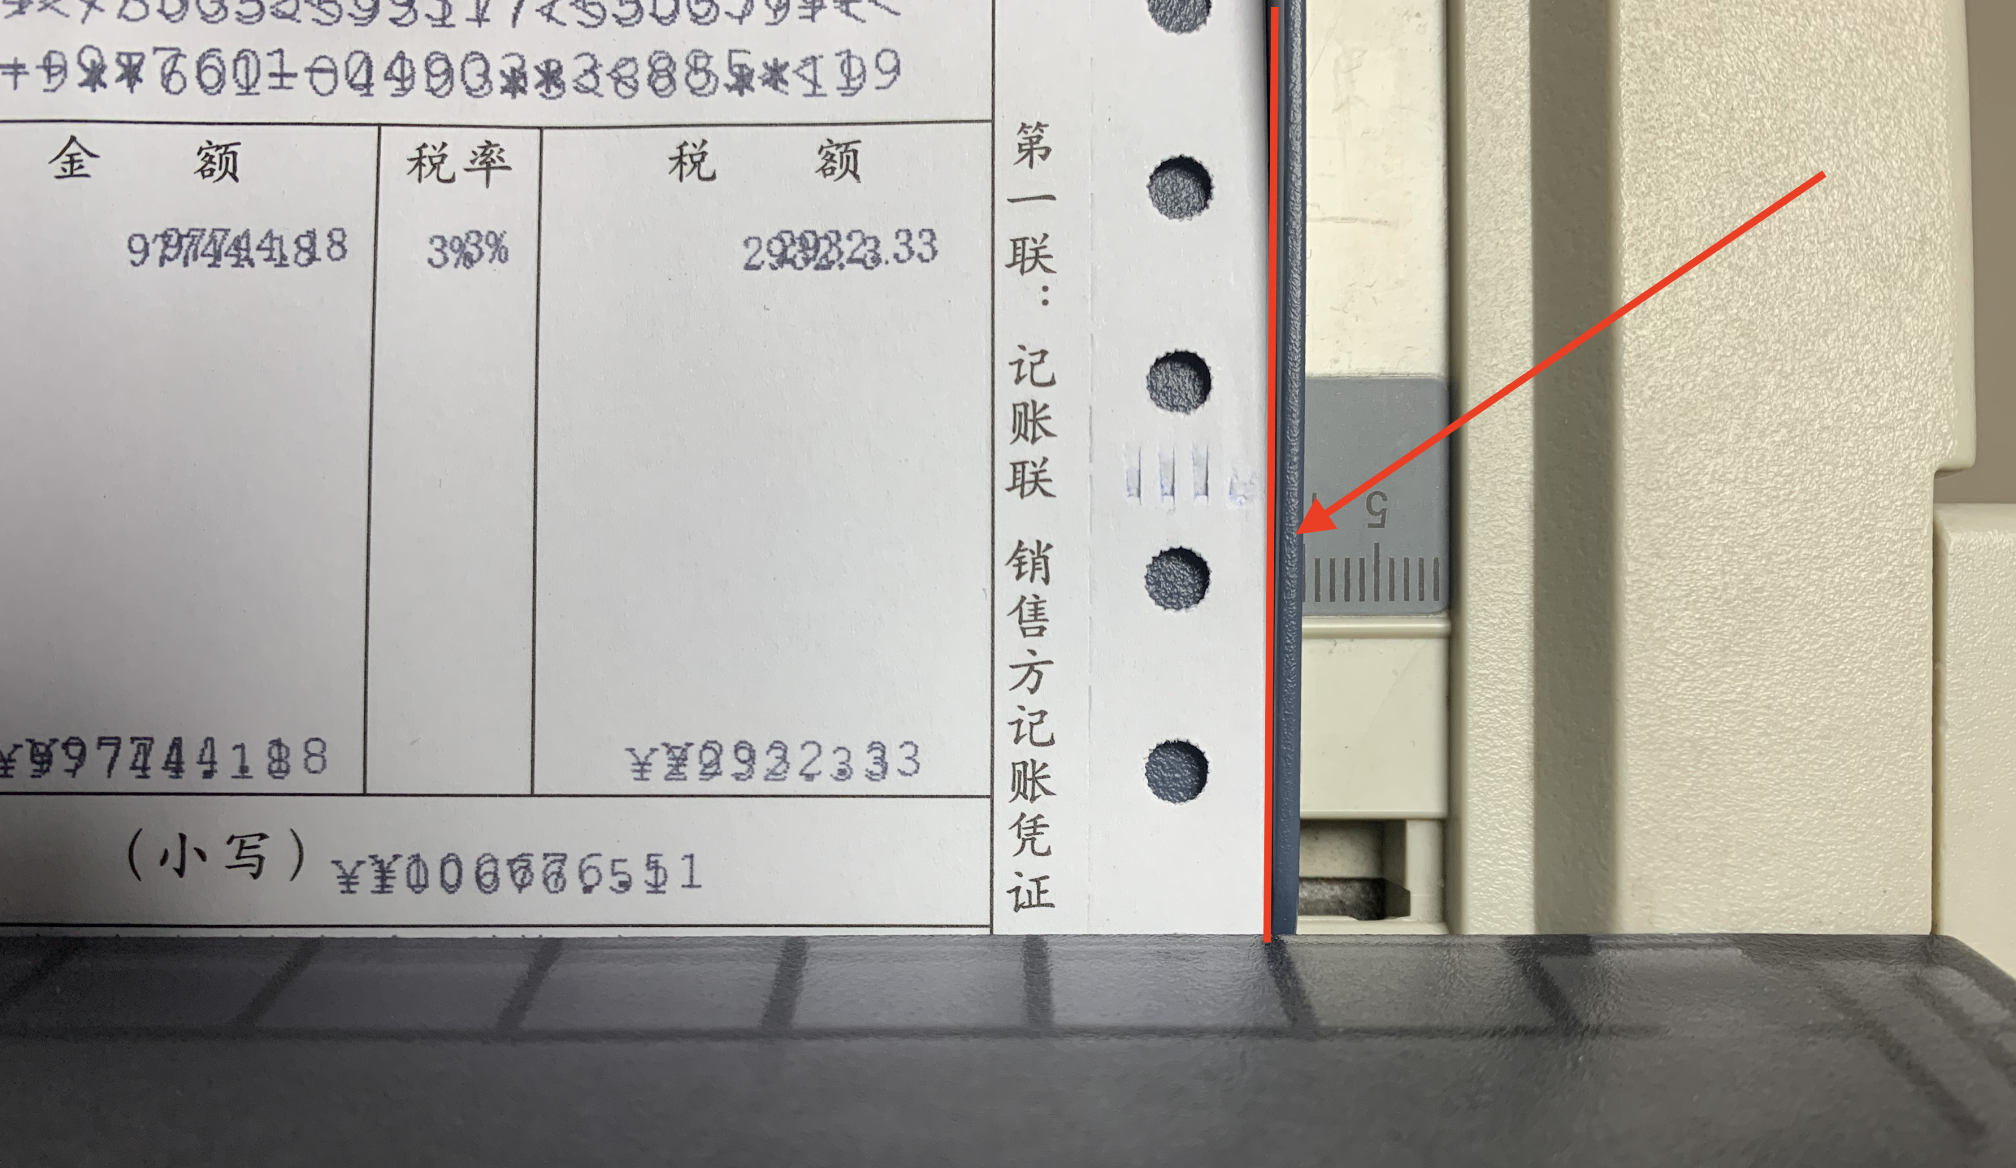 针式打印机如何设置发票连打